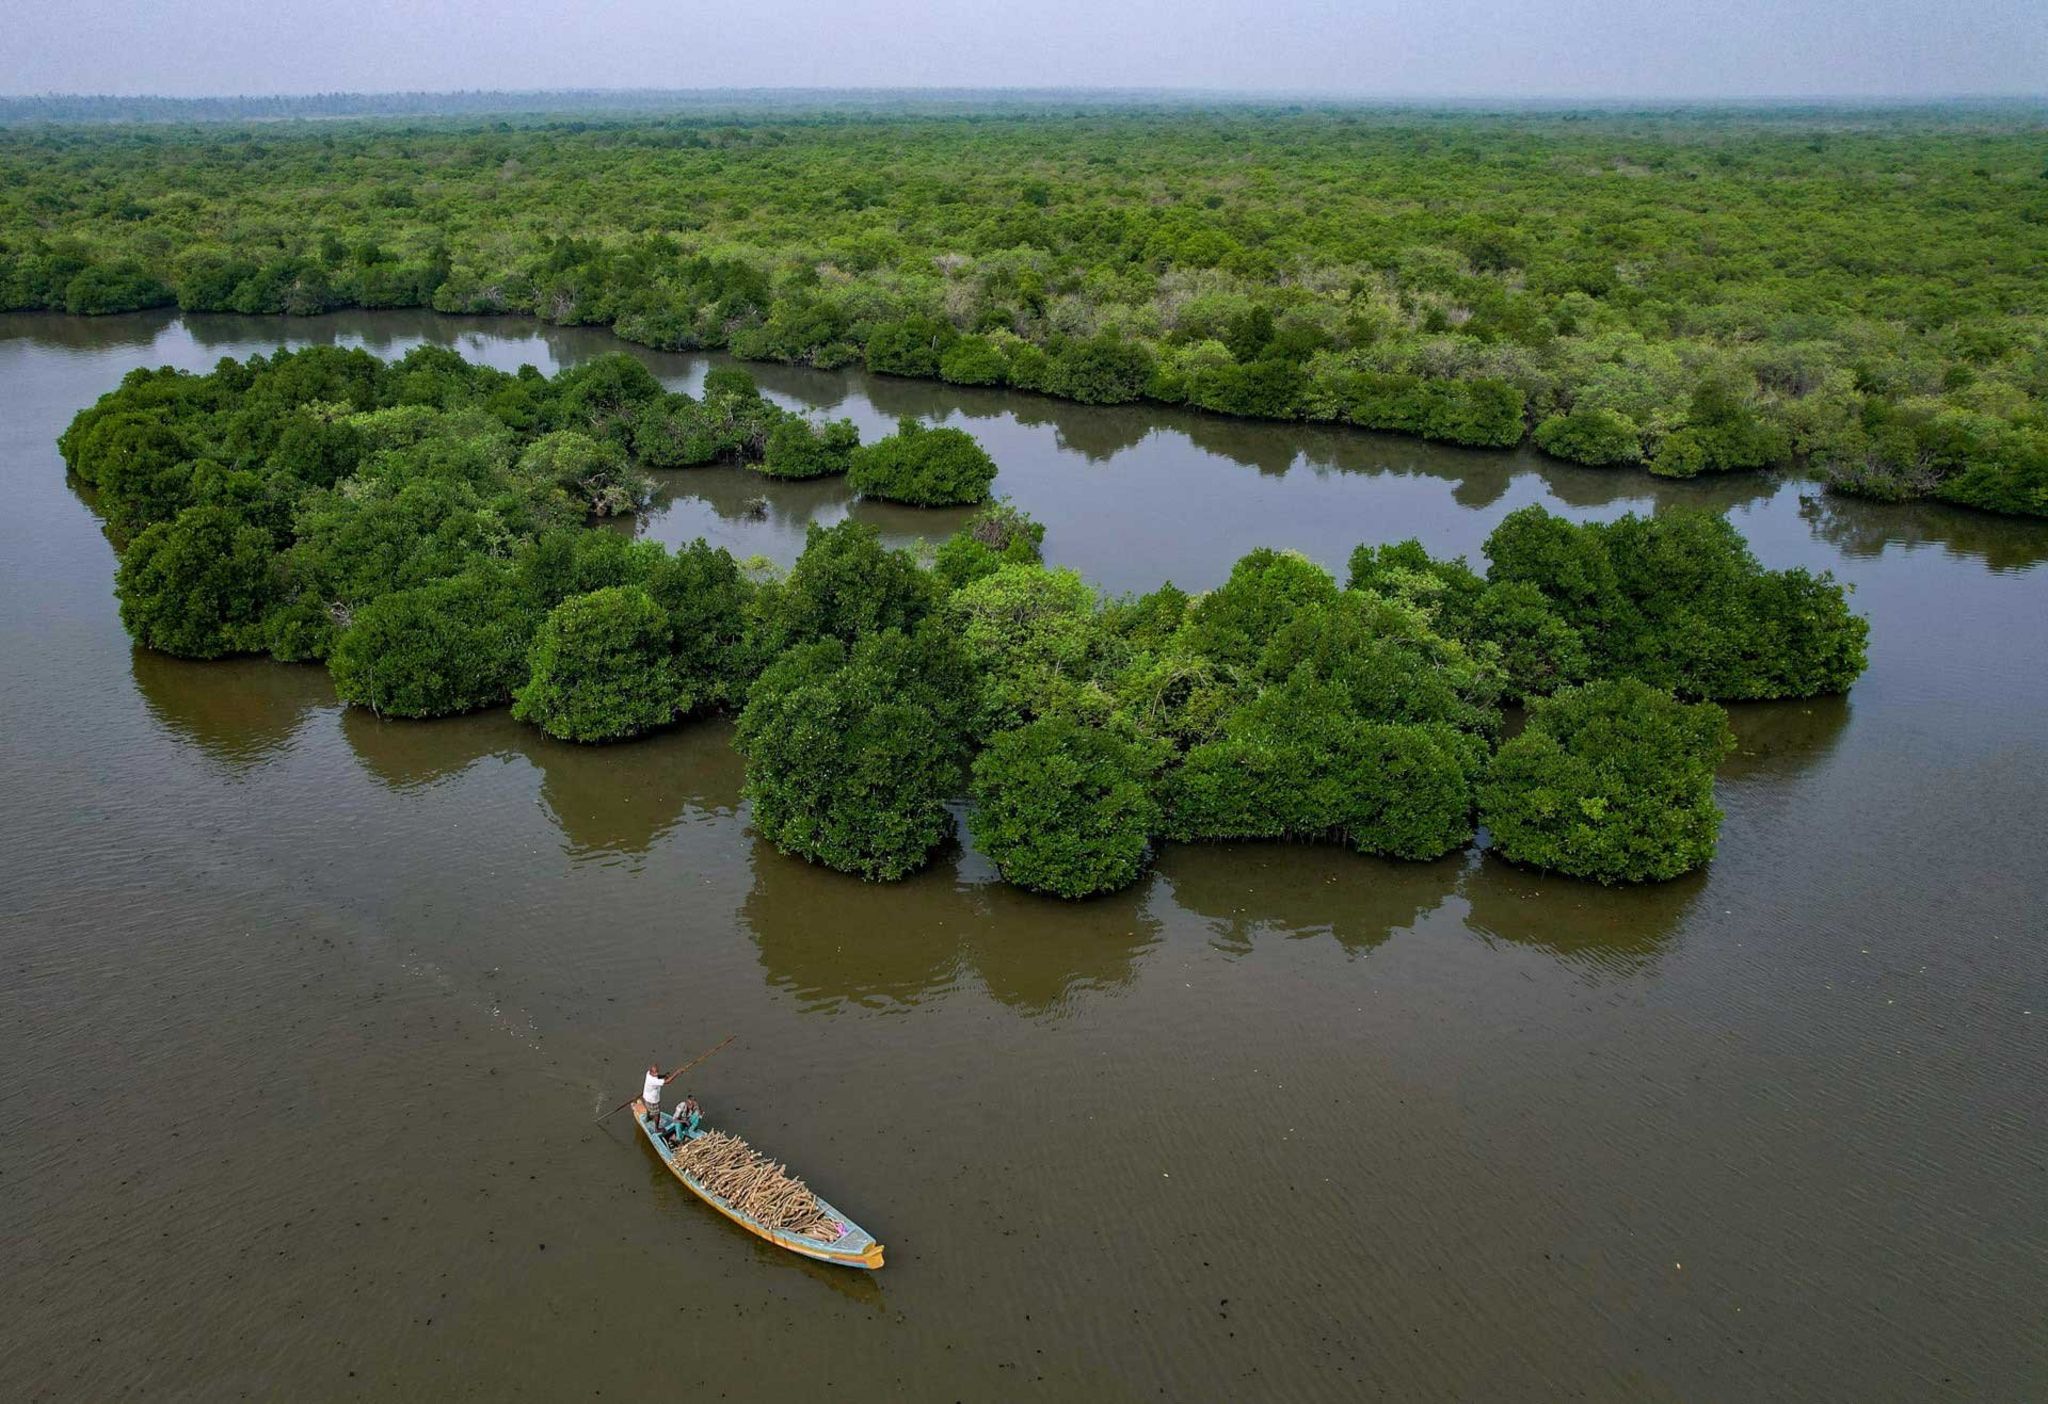 Небольшая лодка с древесиной, собранной в мангровых лесах по обеим сторонам канала, отправляется в ближайшую прибрежную деревню.